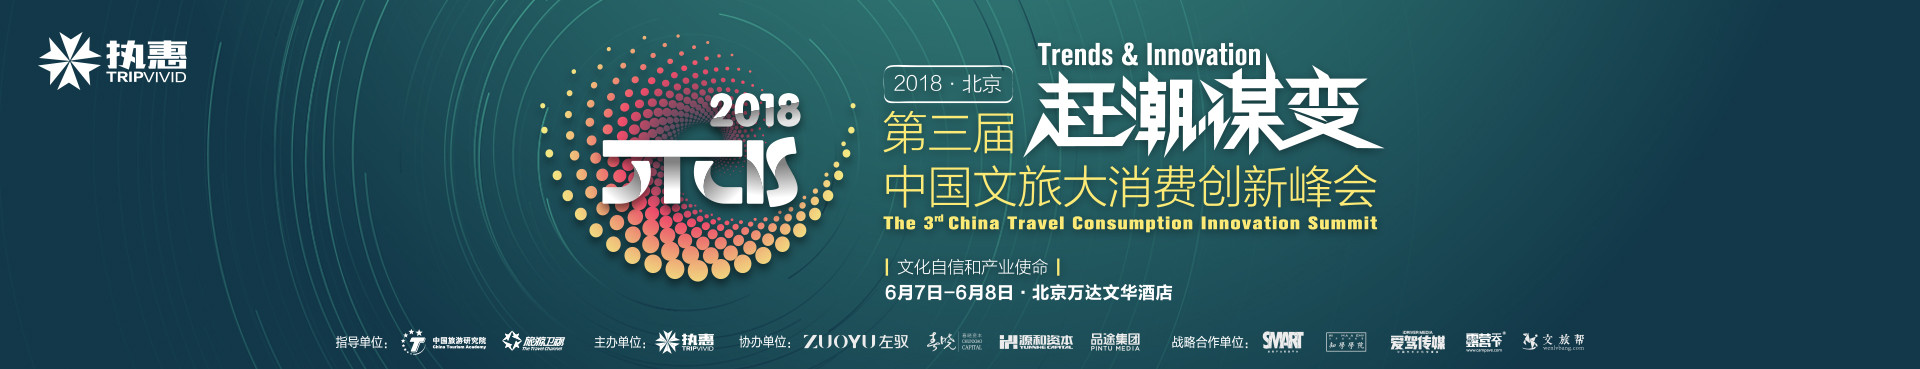 2018CTCIS第三界中国文旅大消费创新峰会